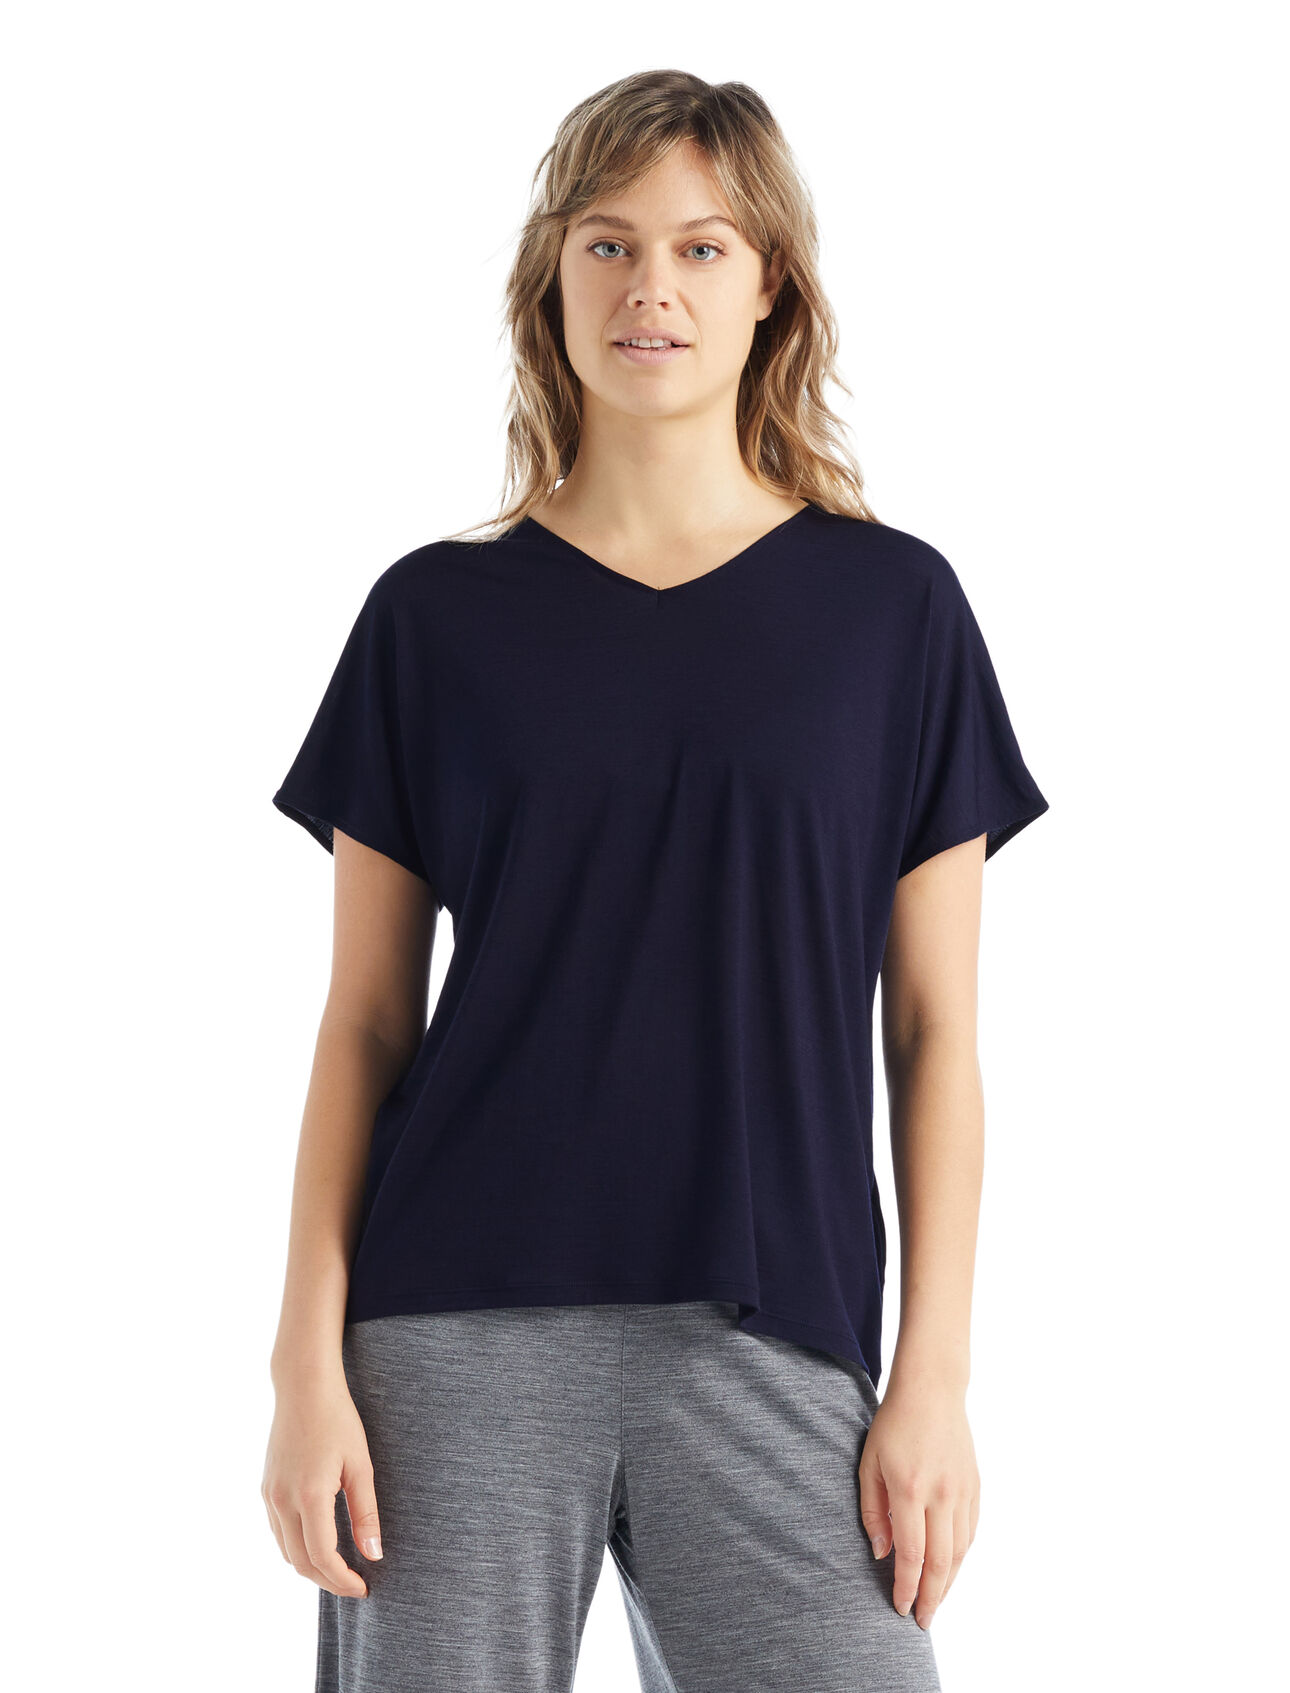 Wendbares Merino Drayden T-Shirt  Damen Ein äußerst vielseitiges T-Shirt für jeden Tag aus unserem Cool-Lite™ Jersey, das wendbare Drayden T-Shirt kann als softes V-Shirt oder umgekehrt als hohes Rundhals-Shirt getragen werden.